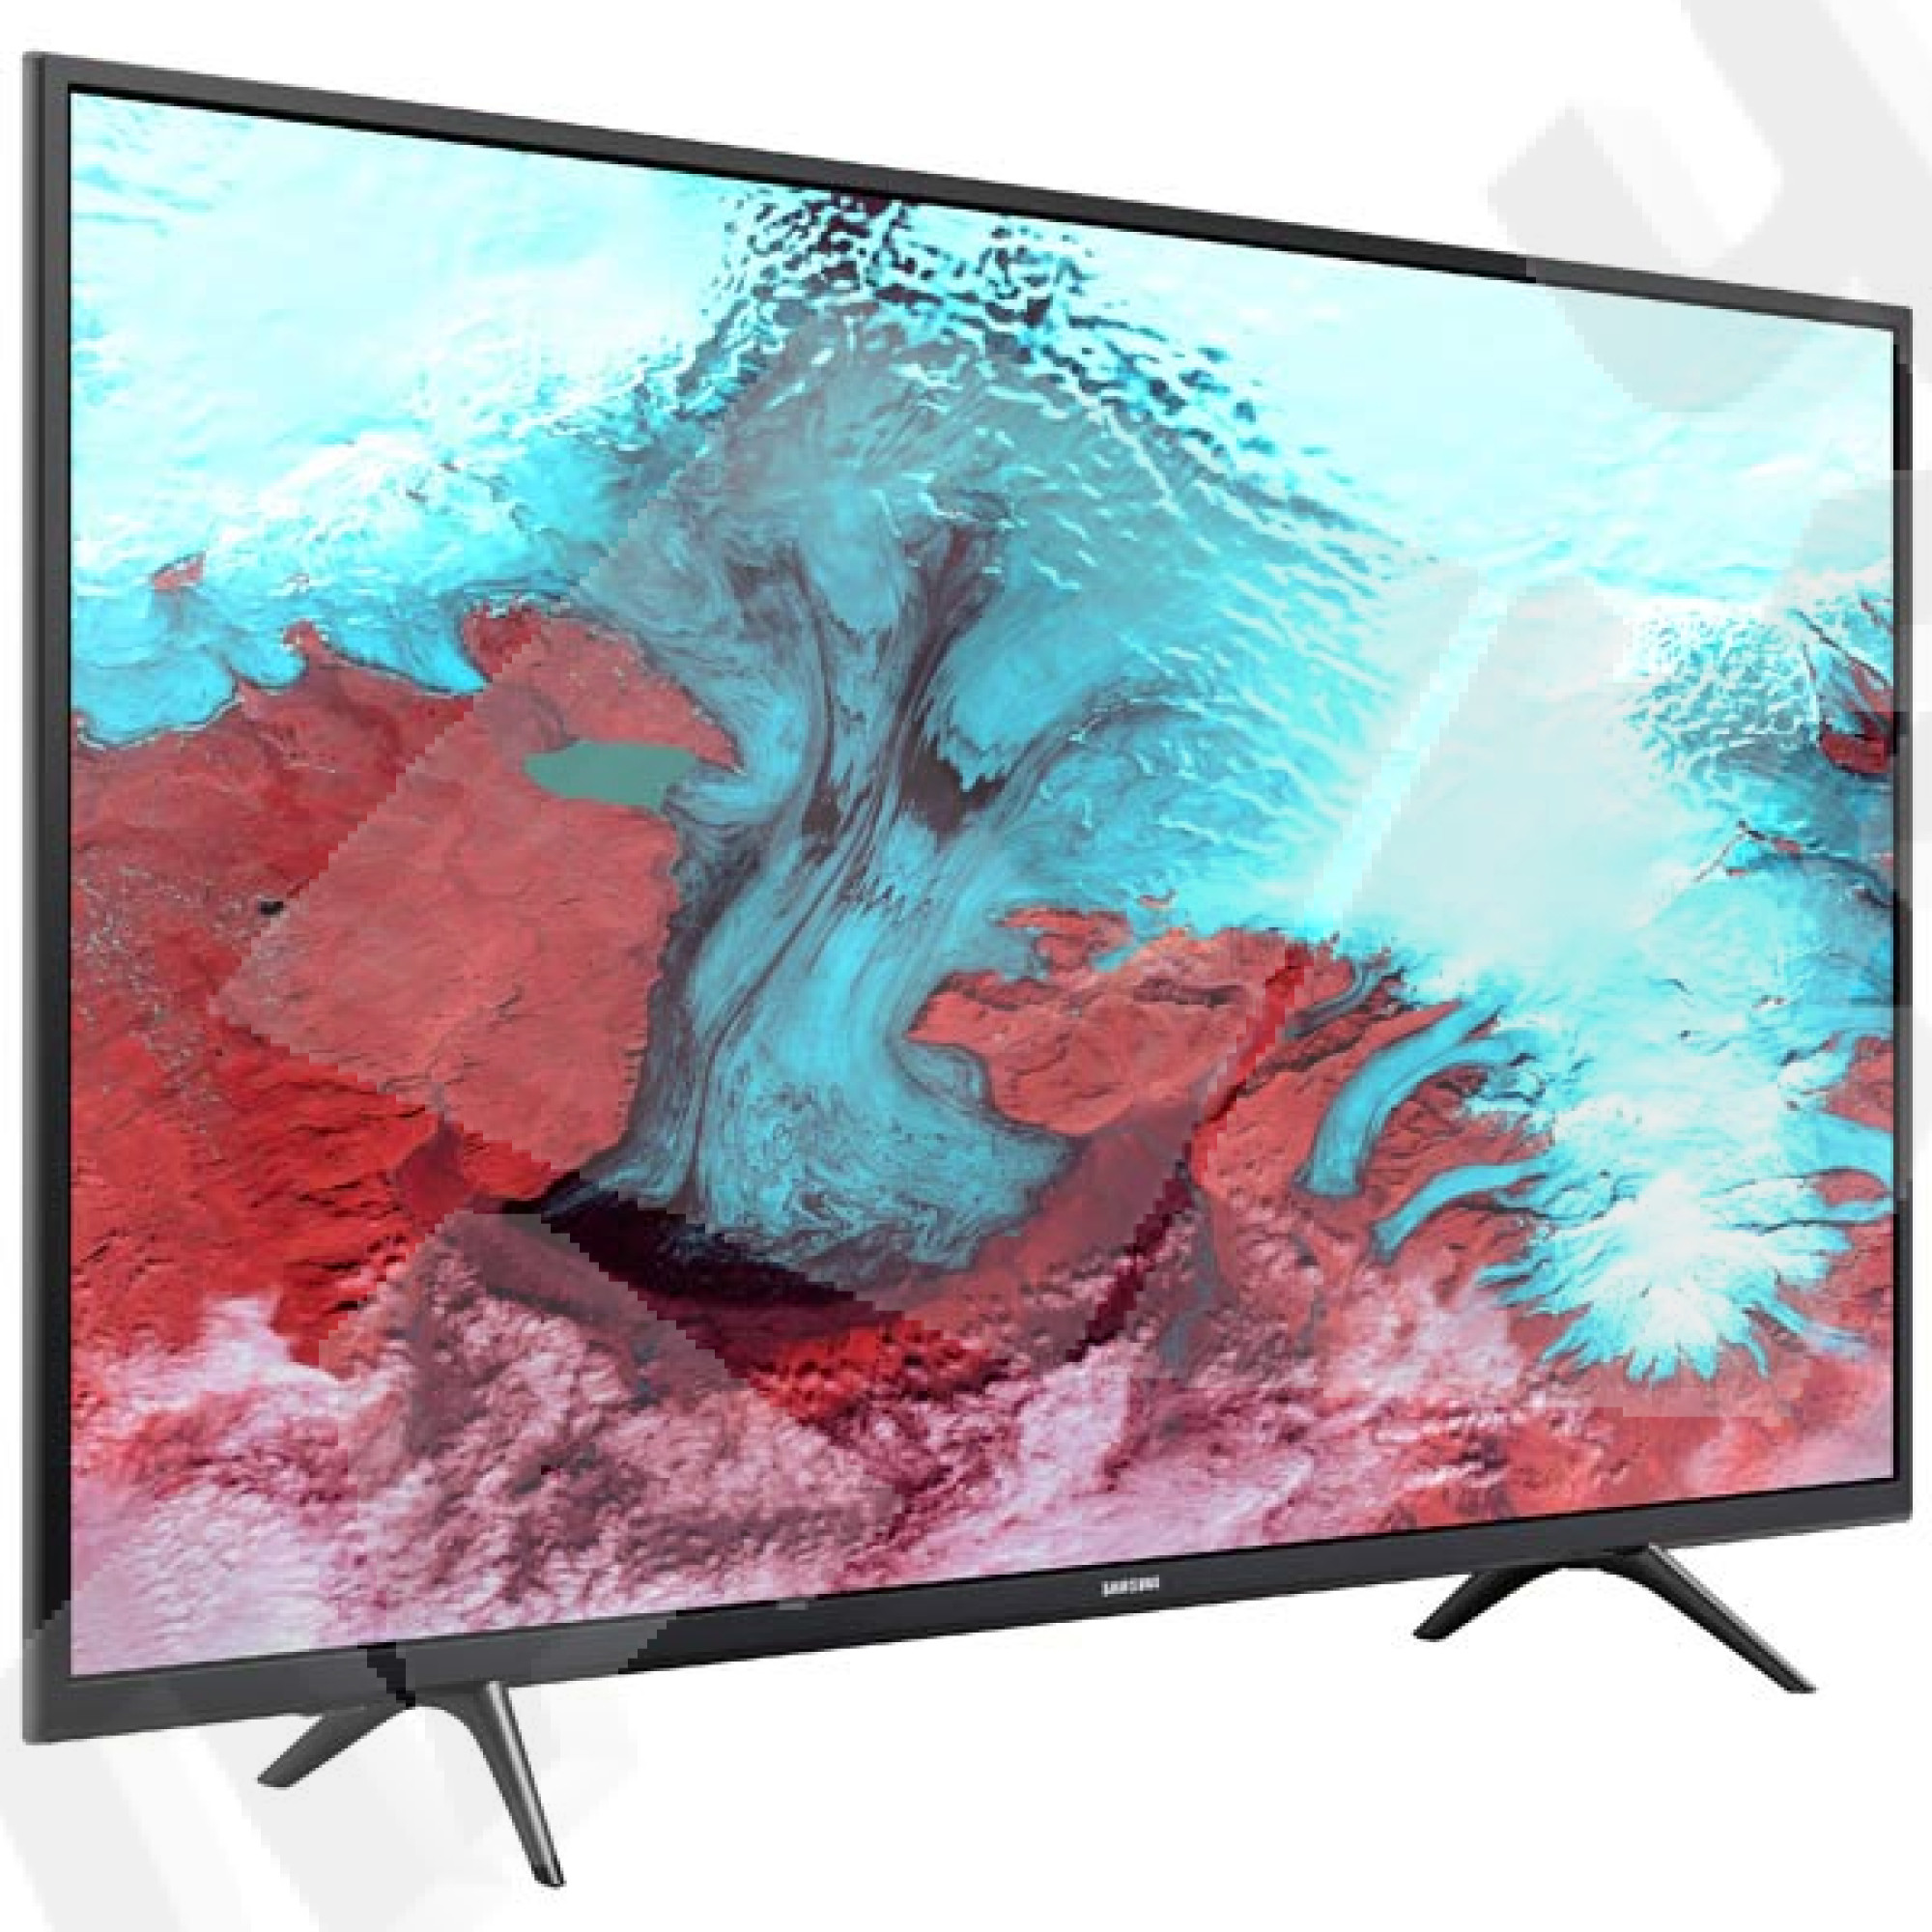 Телевизоры смарт купить дешево. Samsung ue49k5500. Samsung ue43j5272. Samsung ue55k5500au. Samsung ue43j5202au.